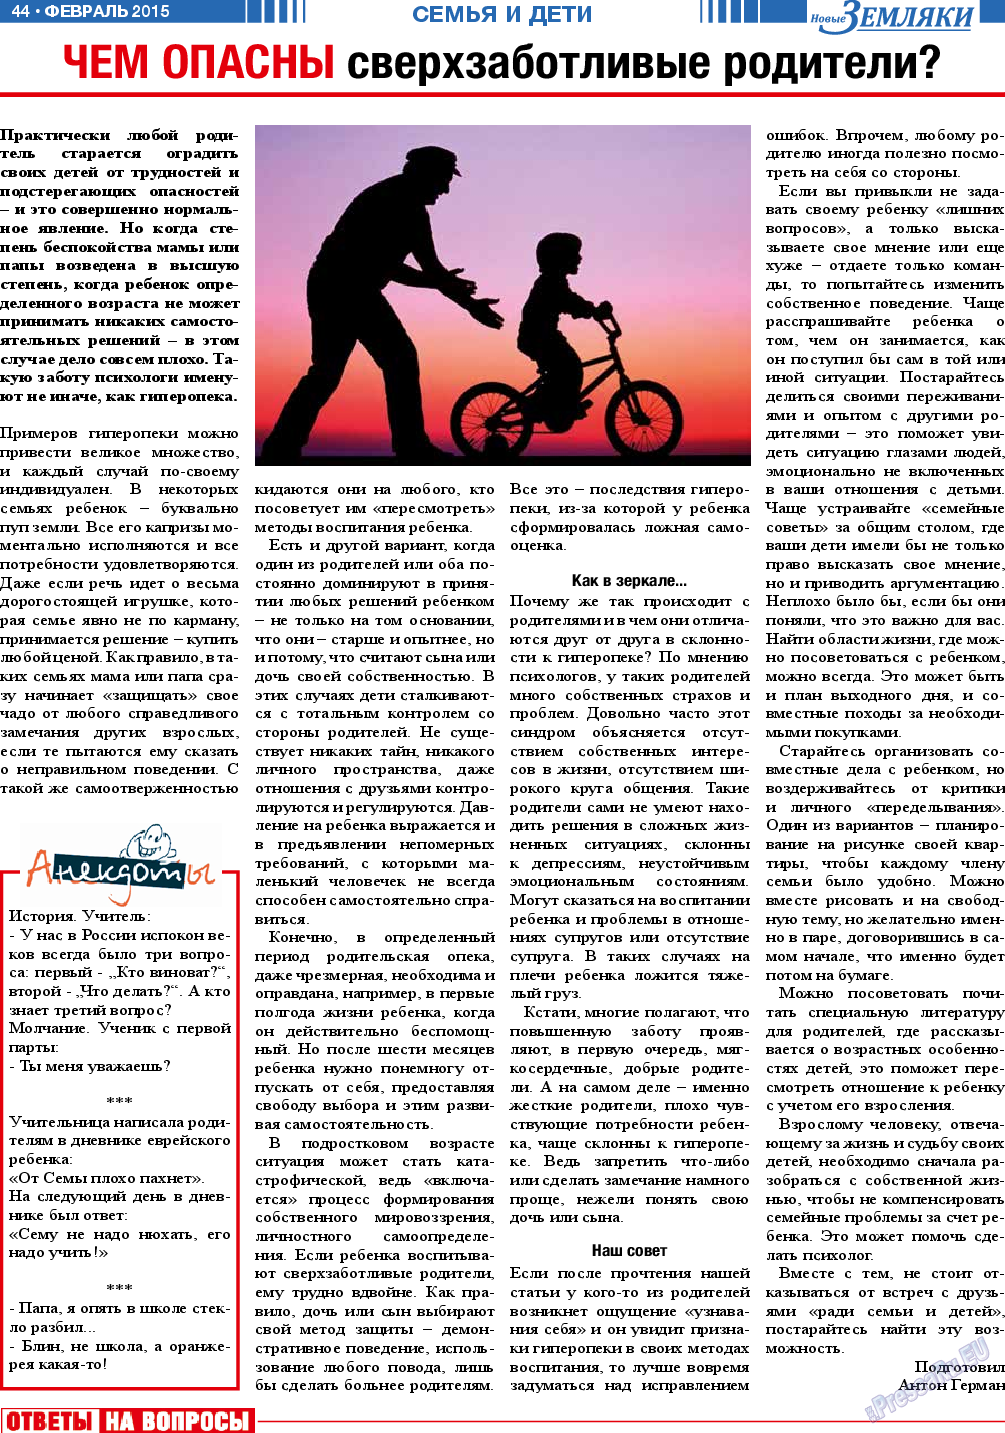 Новые Земляки, газета. 2015 №2 стр.44